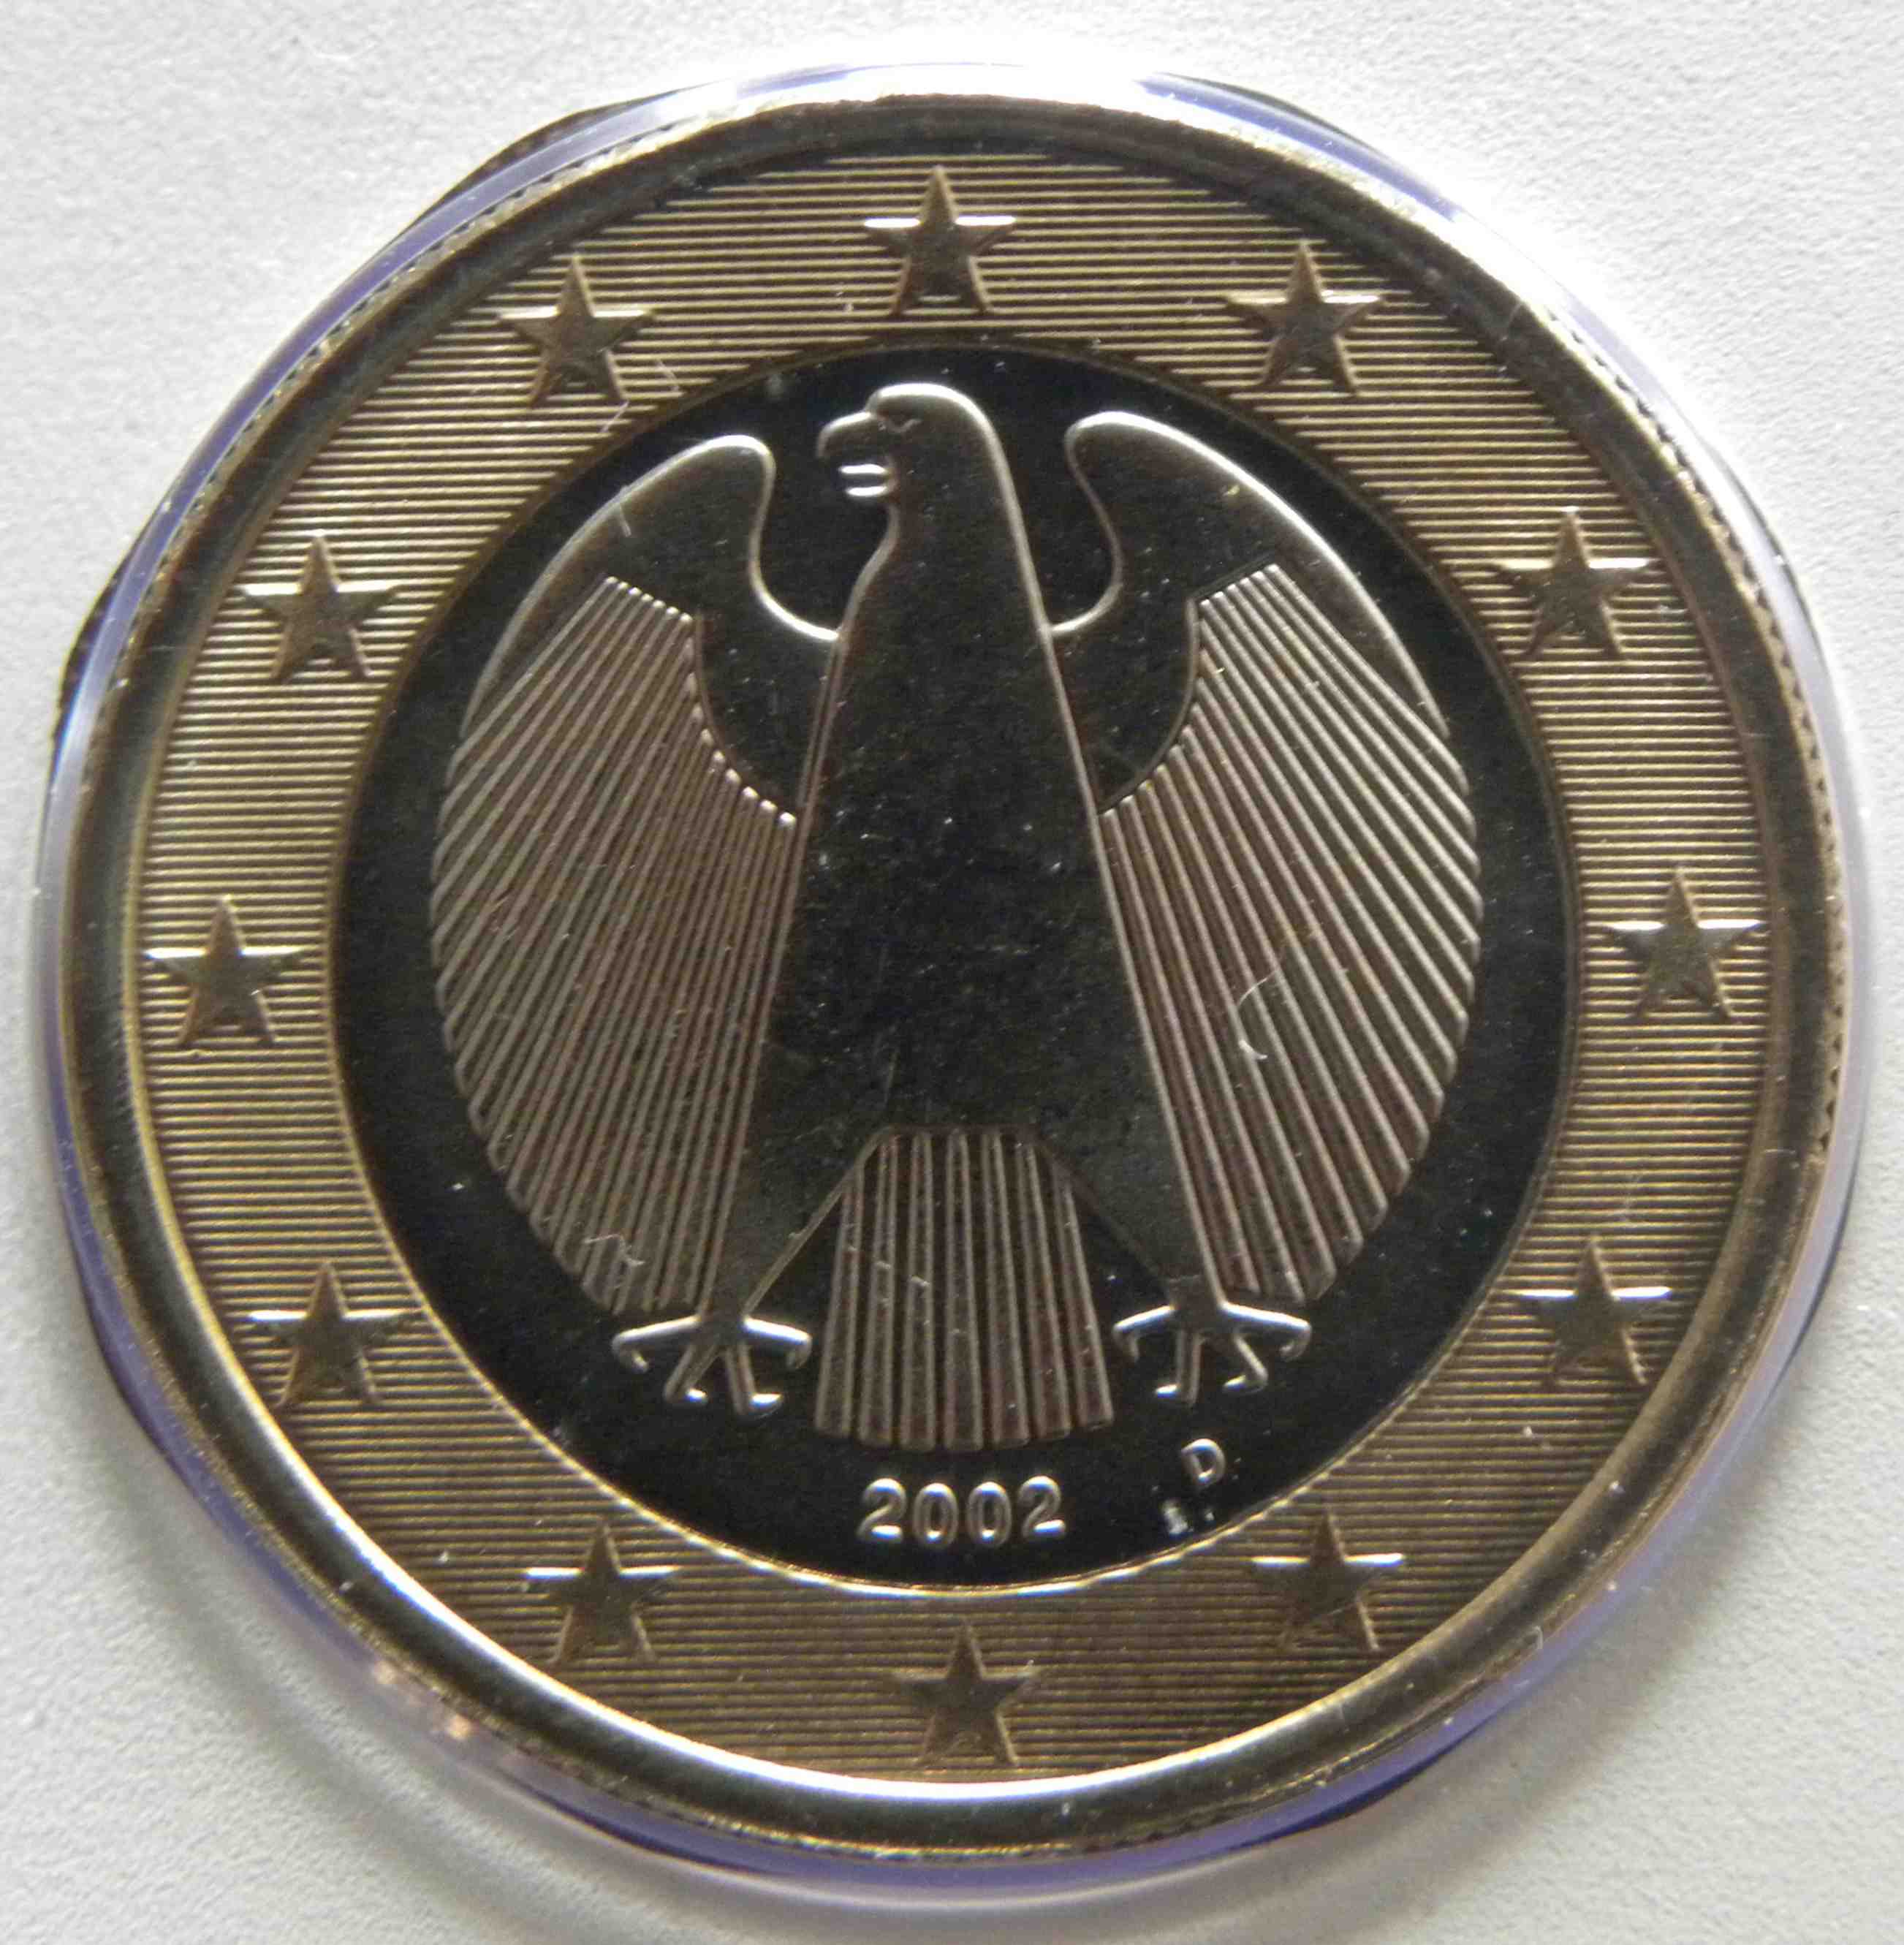 Deutschland 1 Euro Münze 2002 D - euro-muenzen.tv - Der Online